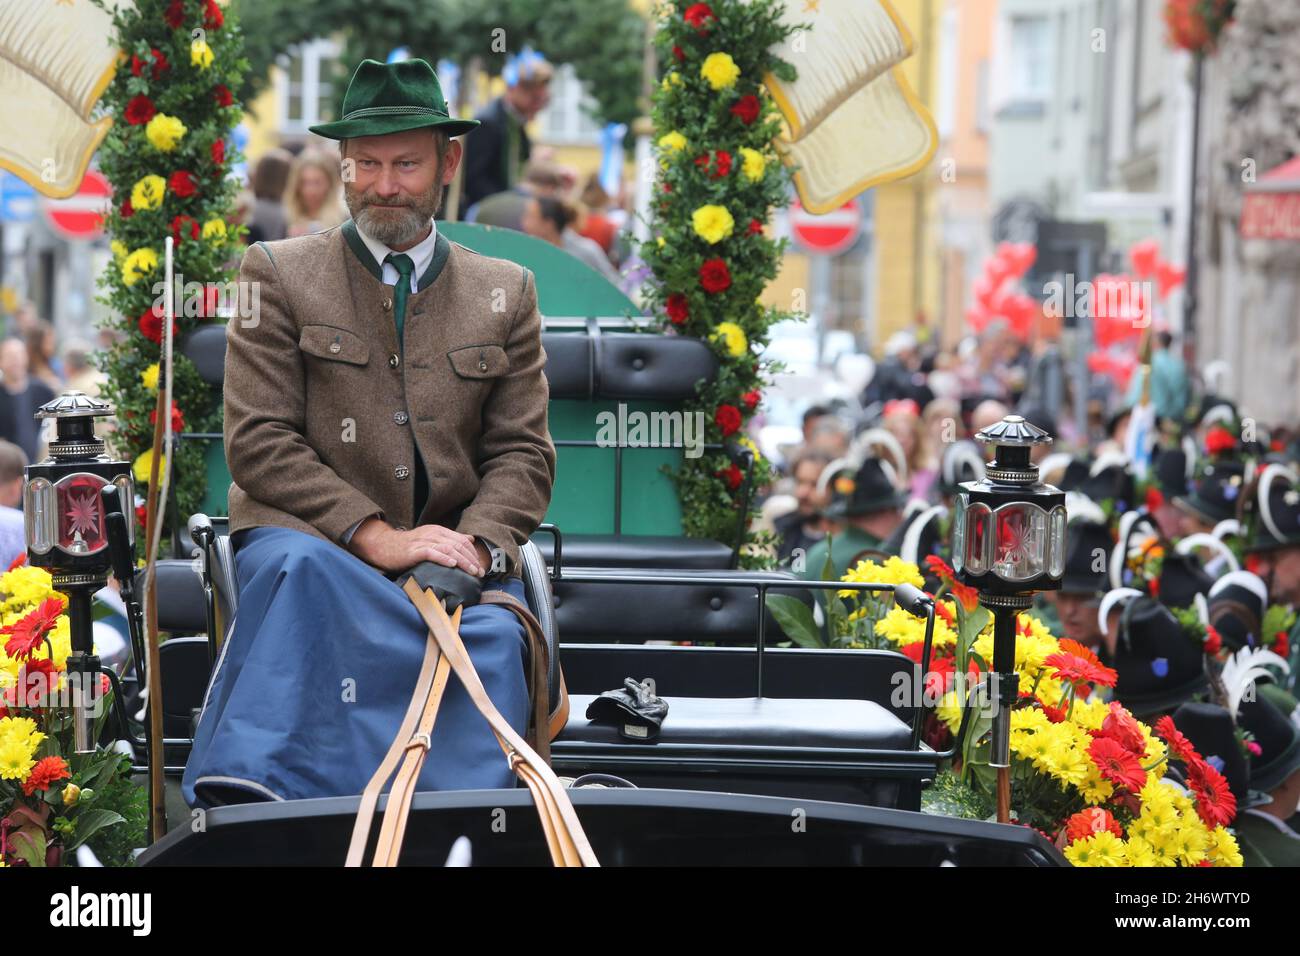 Une voiturette habitée par un homme dans une veste et un chapeau bavarois traditionnels au début de la parade de l'Oktoberfest. Banque D'Images